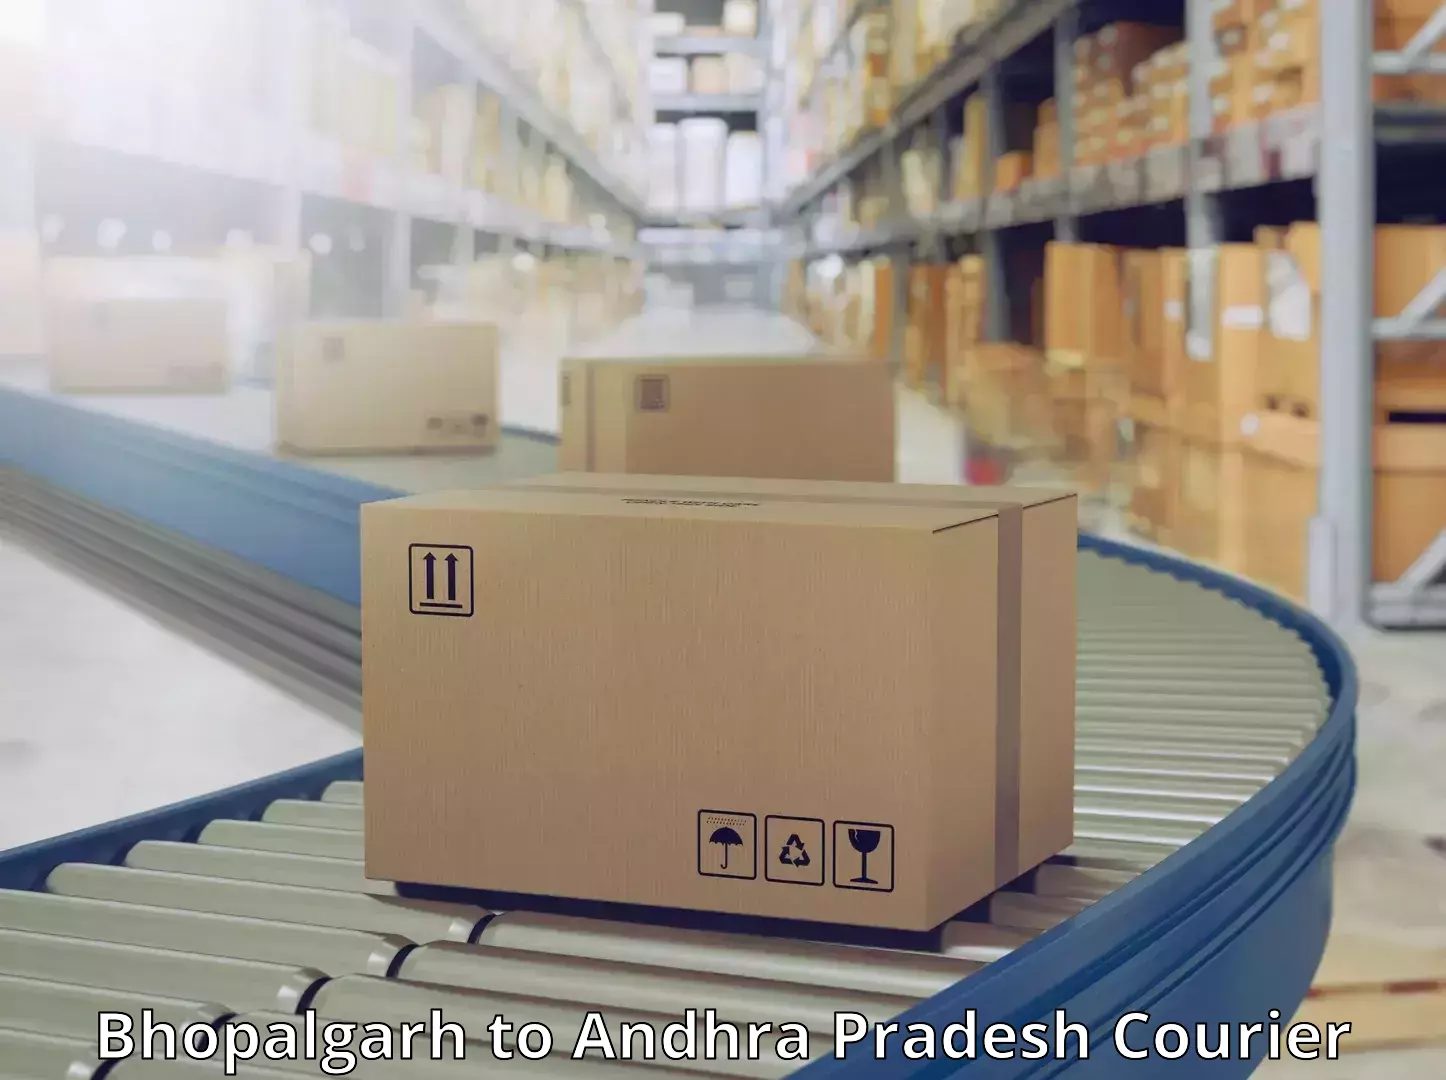 Flexible parcel services Bhopalgarh to Andhra Pradesh